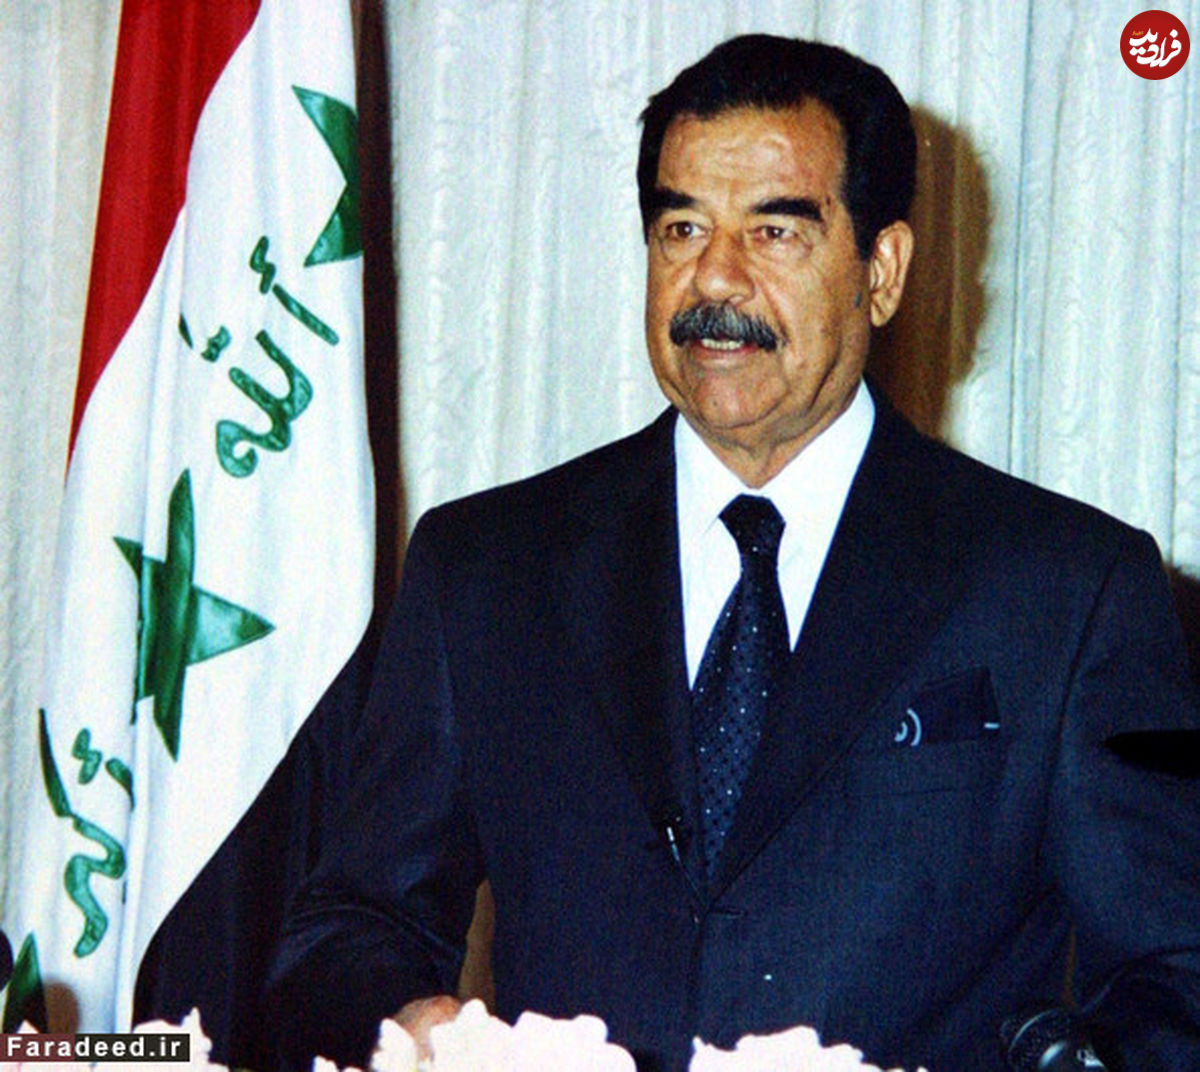 آخرین حرف صدام پای چوبه دار علیه ایرانیان چه بود؟